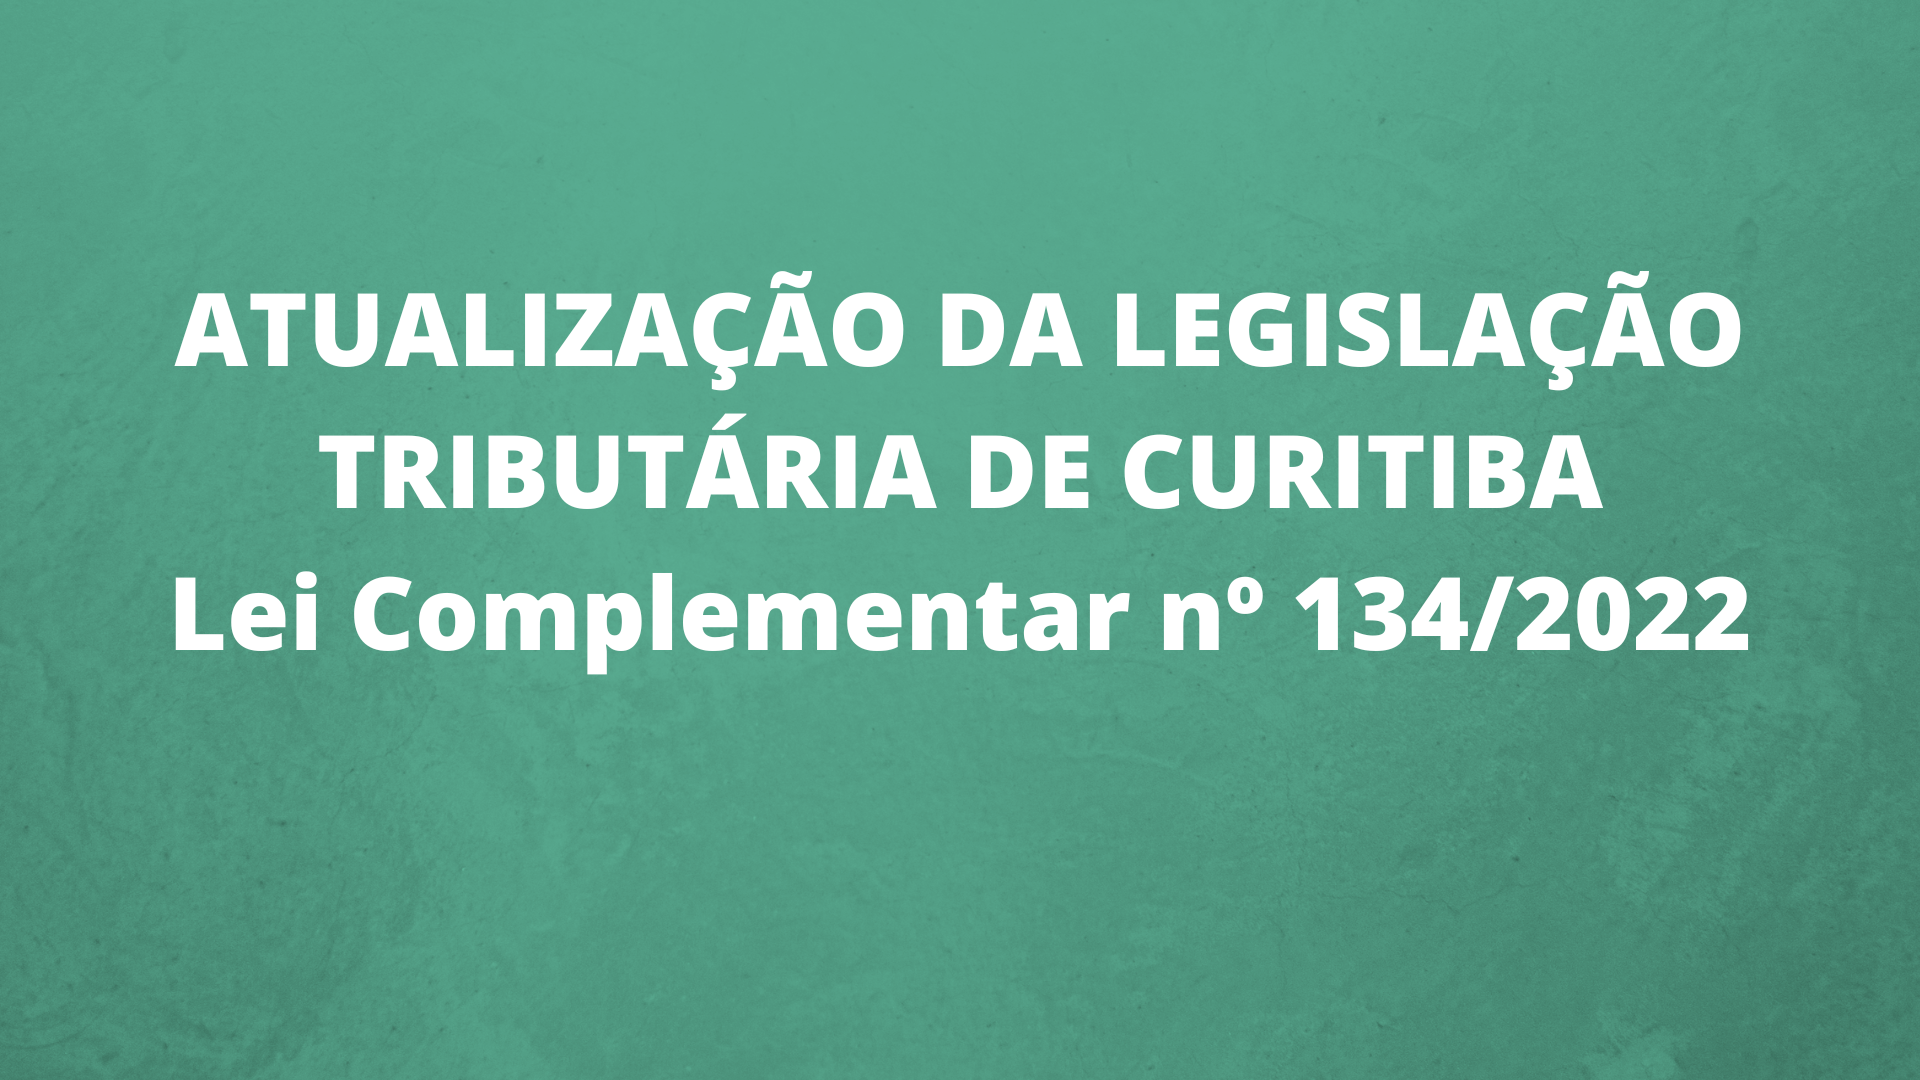 ATUALIZAÇÃO DA LEGISLAÇÃO TRIBUTÁRIA DE CURITIBA – Lei Complementar nº 134/2022